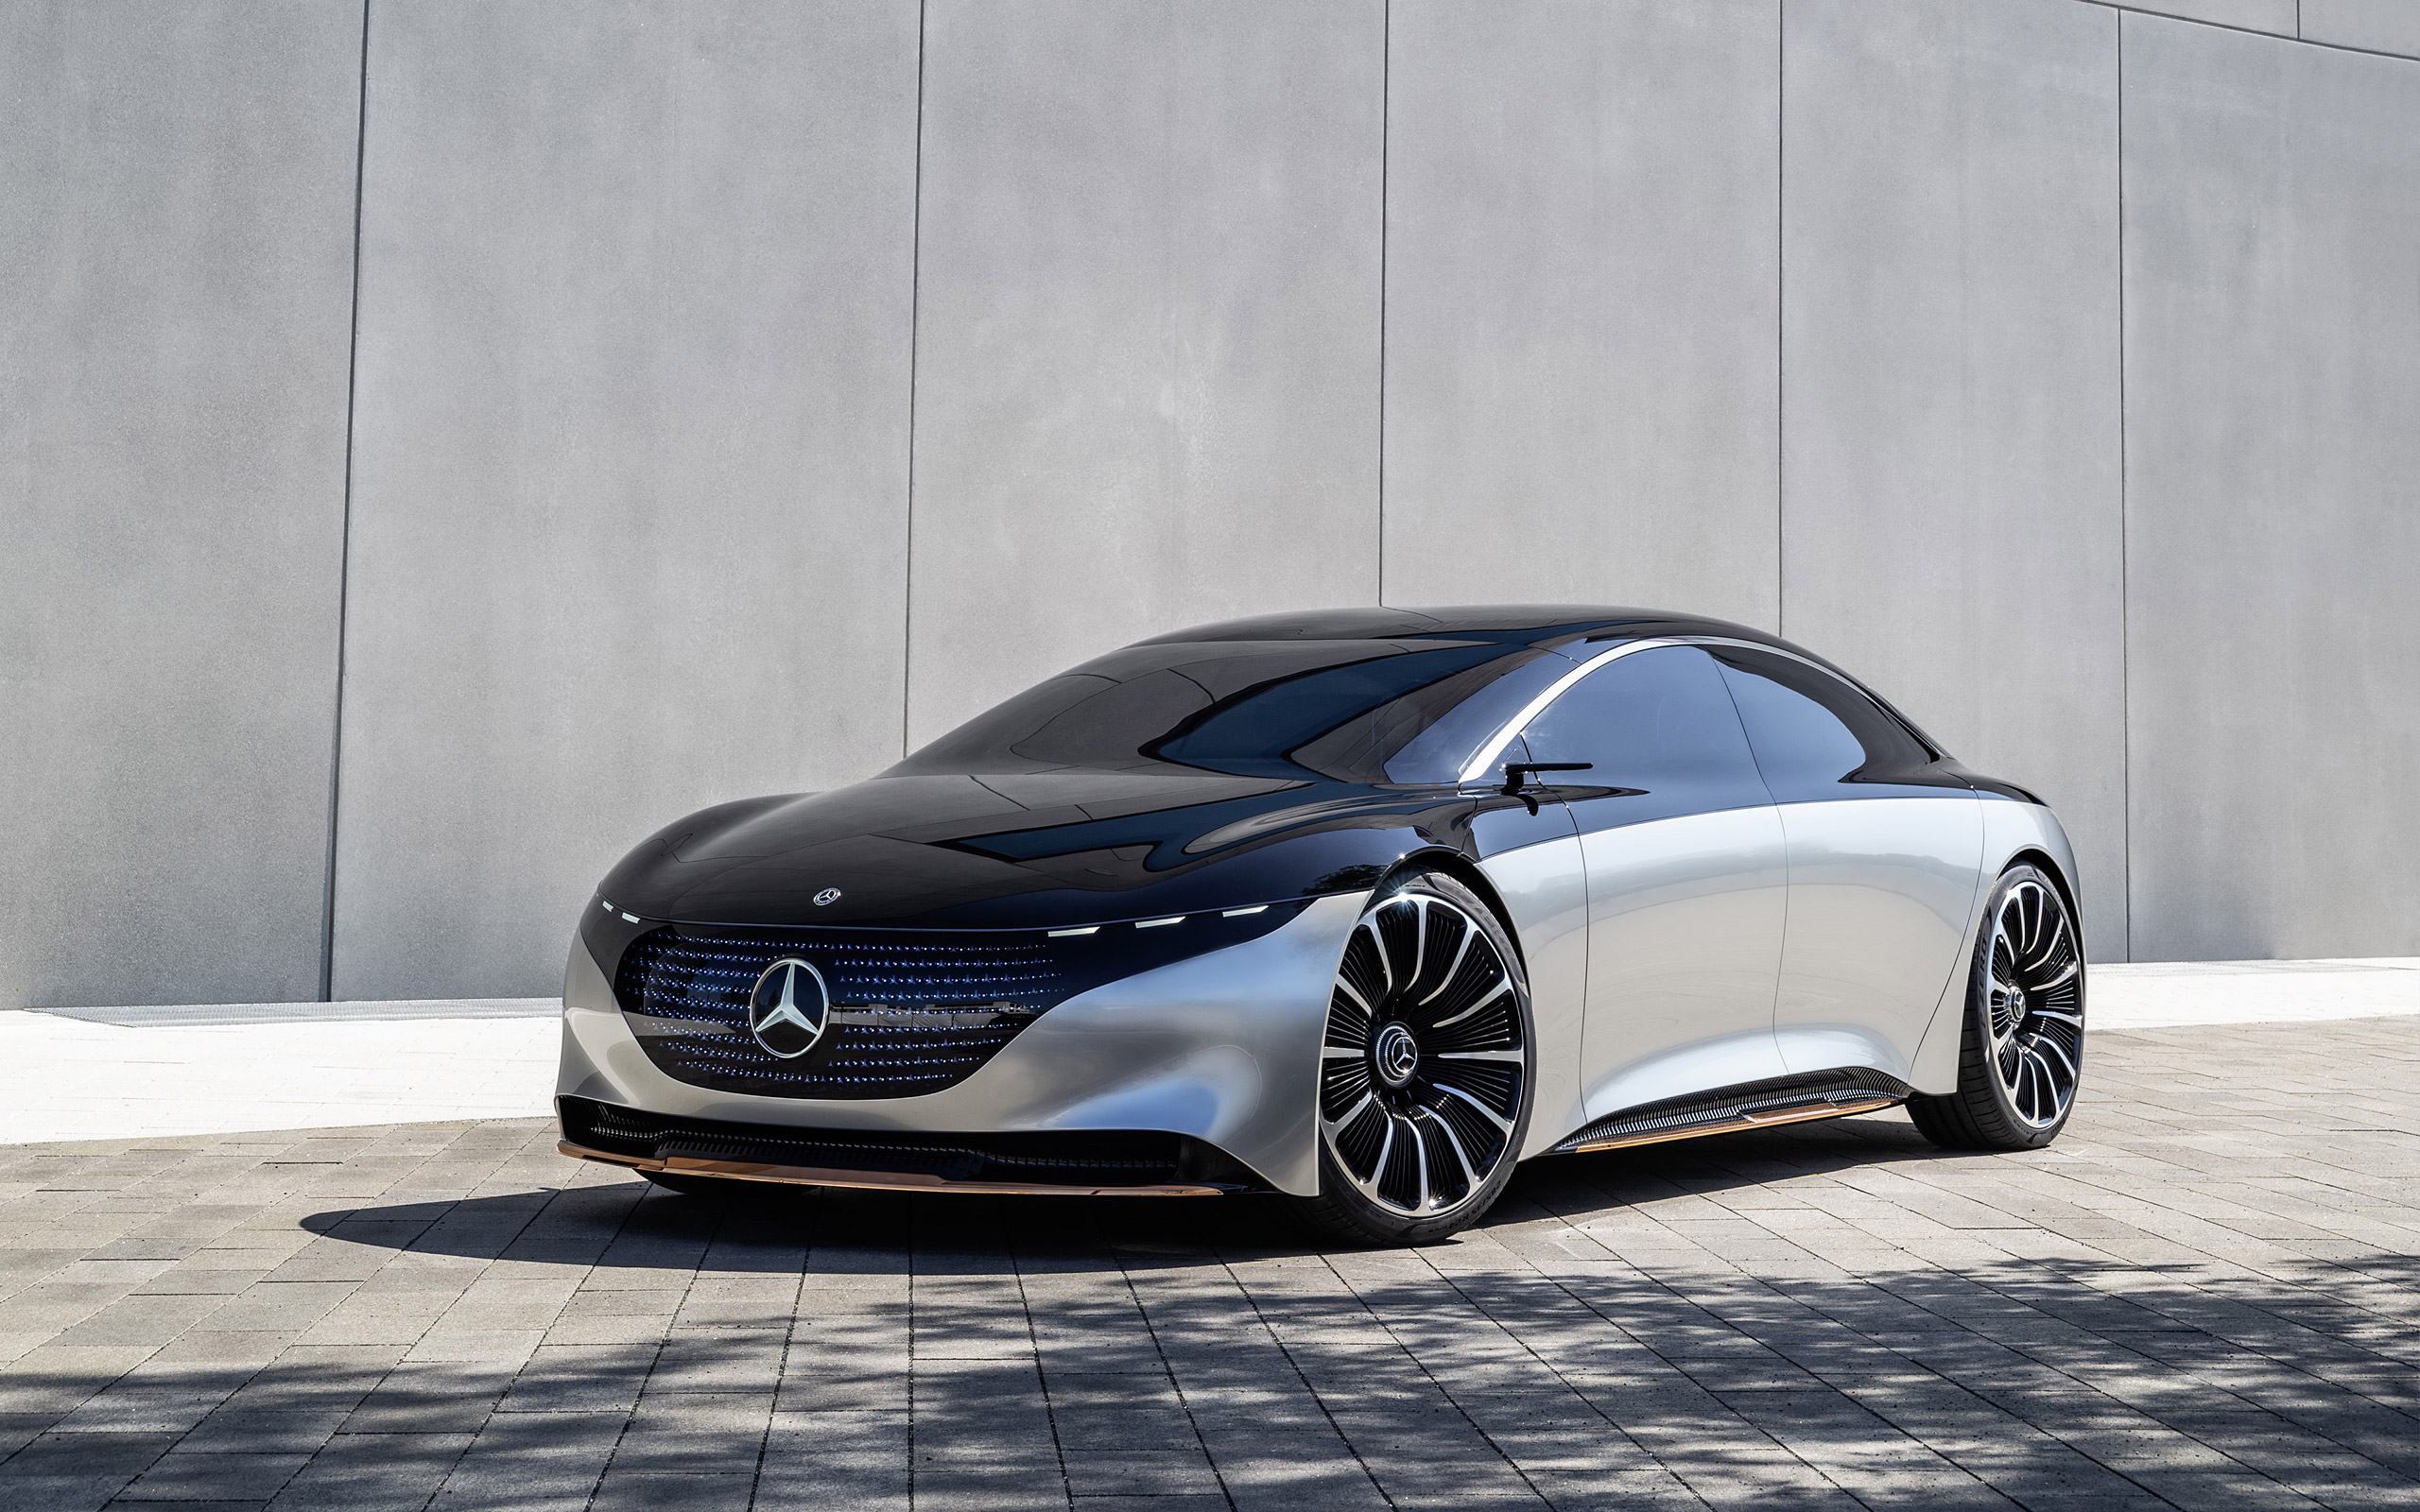  2019 Mercedes-Benz Vision EQS Concept Wallpaper.